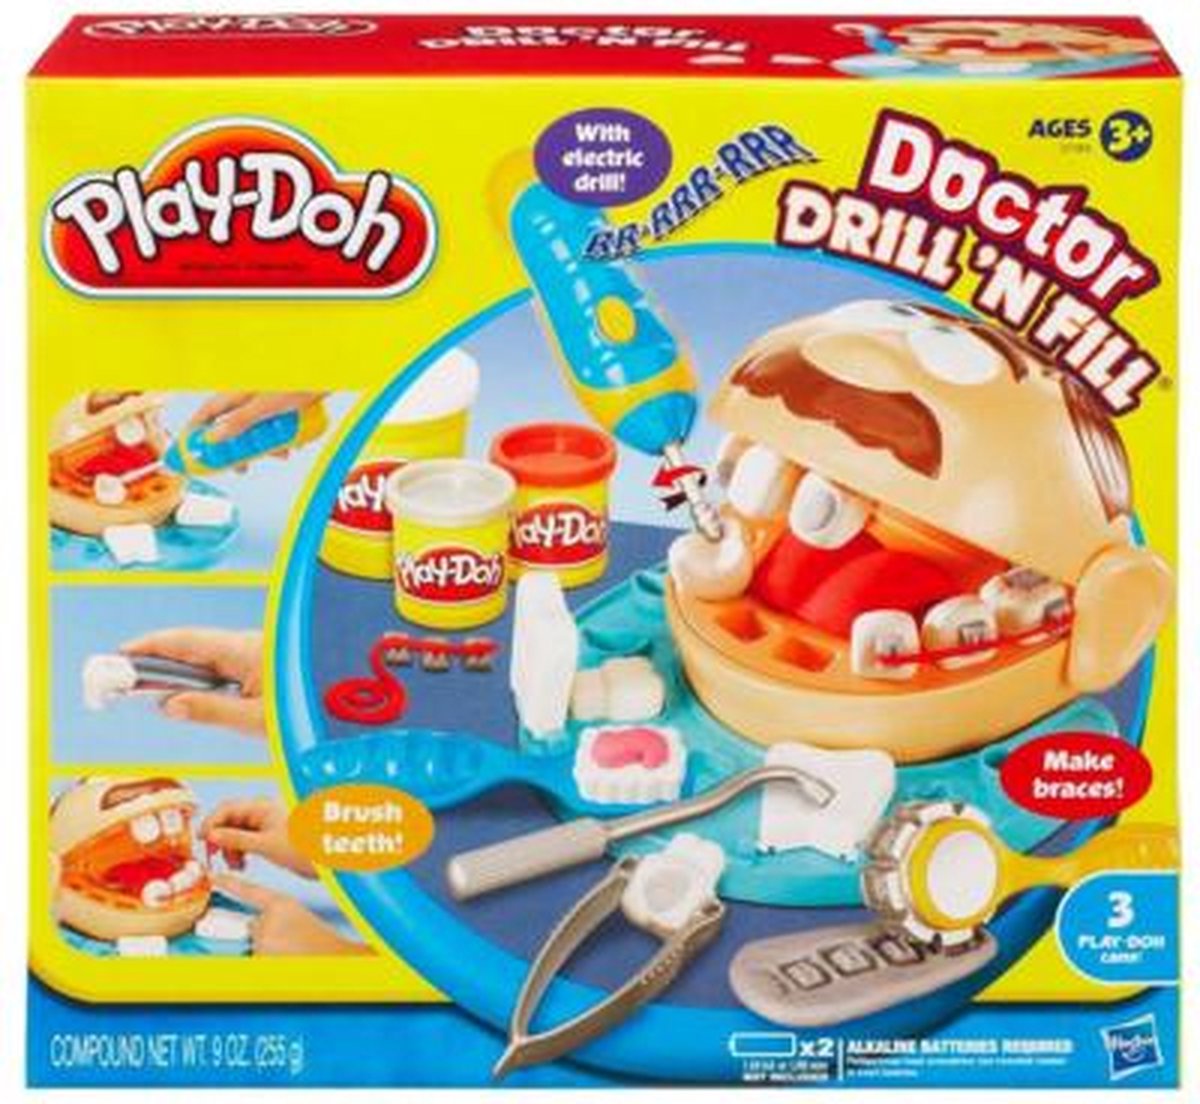 Enfants Petit dentiste Jeu de pâte Set Jouet Docteur Drill And Fill Playset  Playdough Jouet